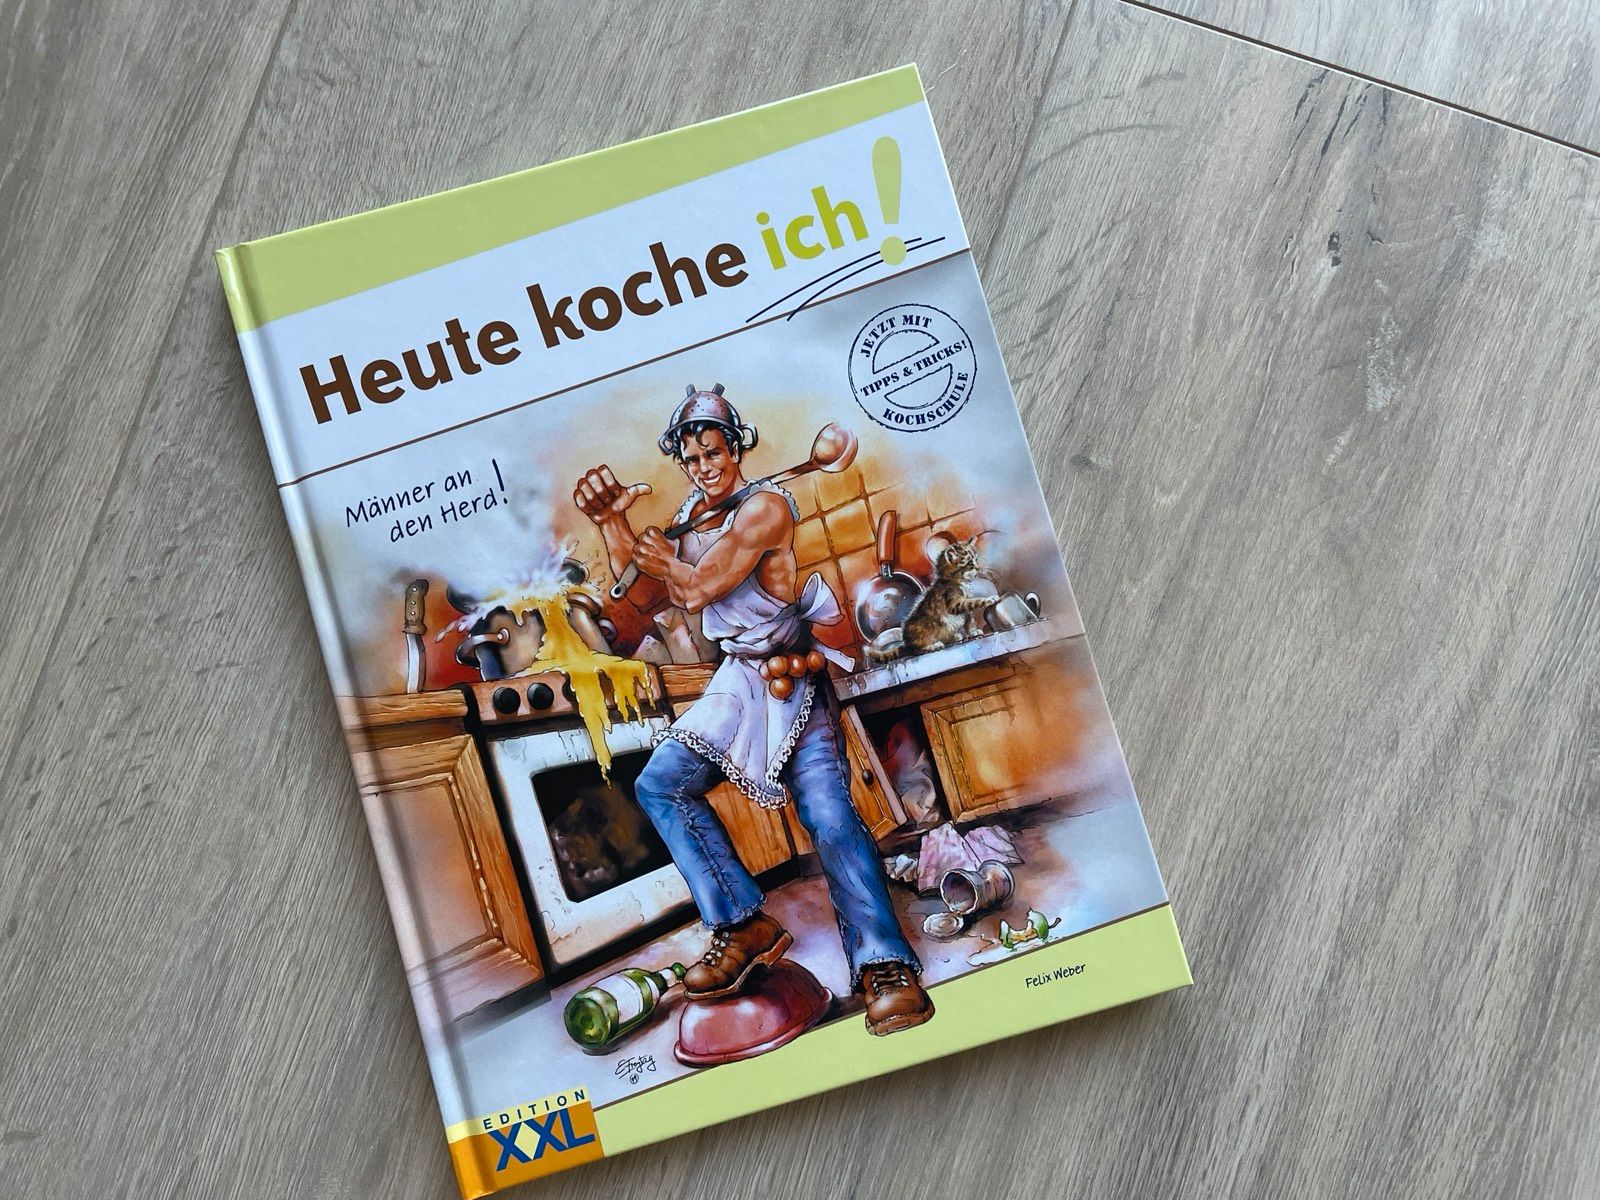 Heute koche ich! Männer an den Herd! Buch Kochbuch neu in Hamburg-Mitte ...